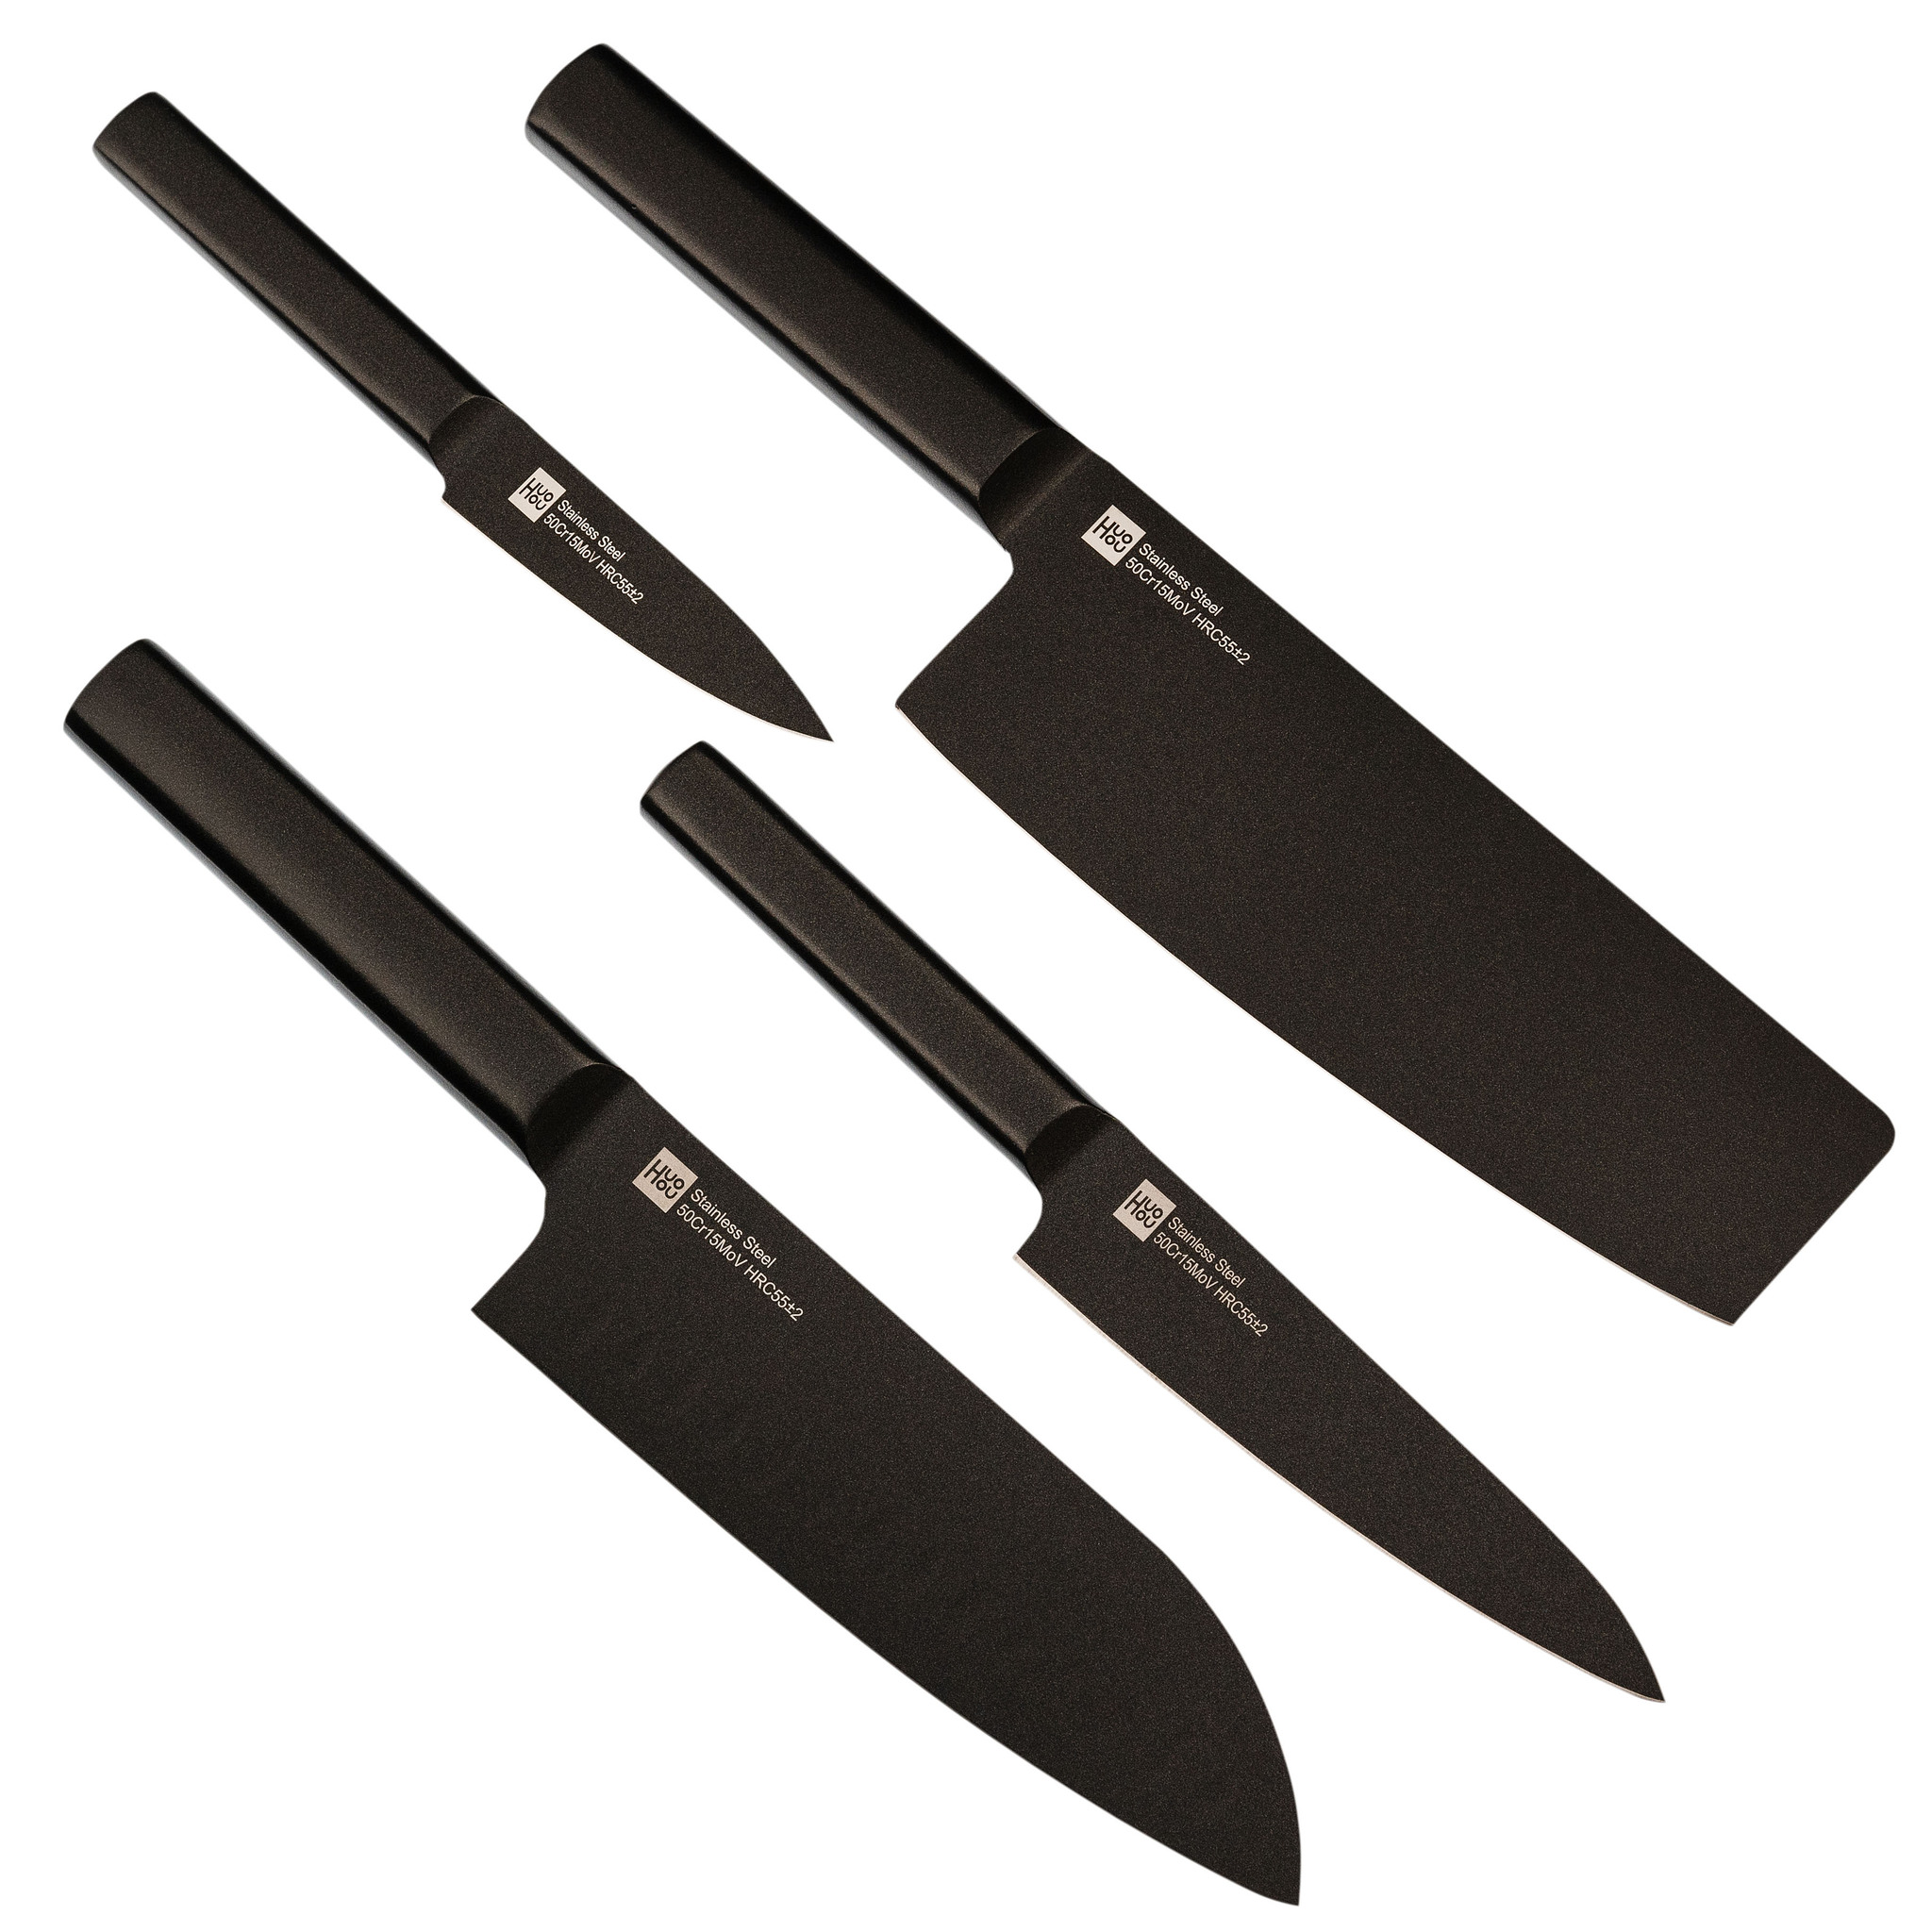 фото Набор кухонных ножей на подставке xiaomi huohou 5-piece non-stick kitchen knife set